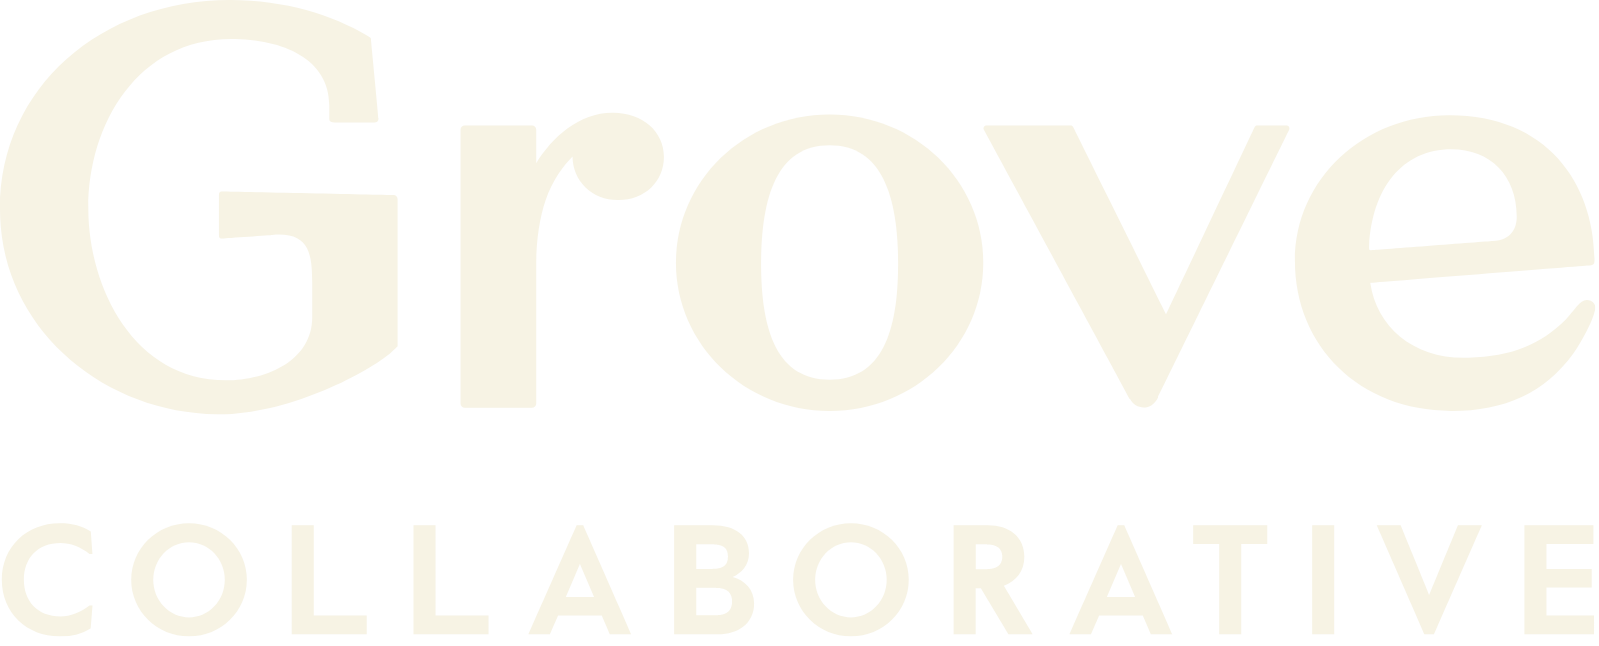 Grove Collaborative logo grand pour les fonds sombres (PNG transparent)